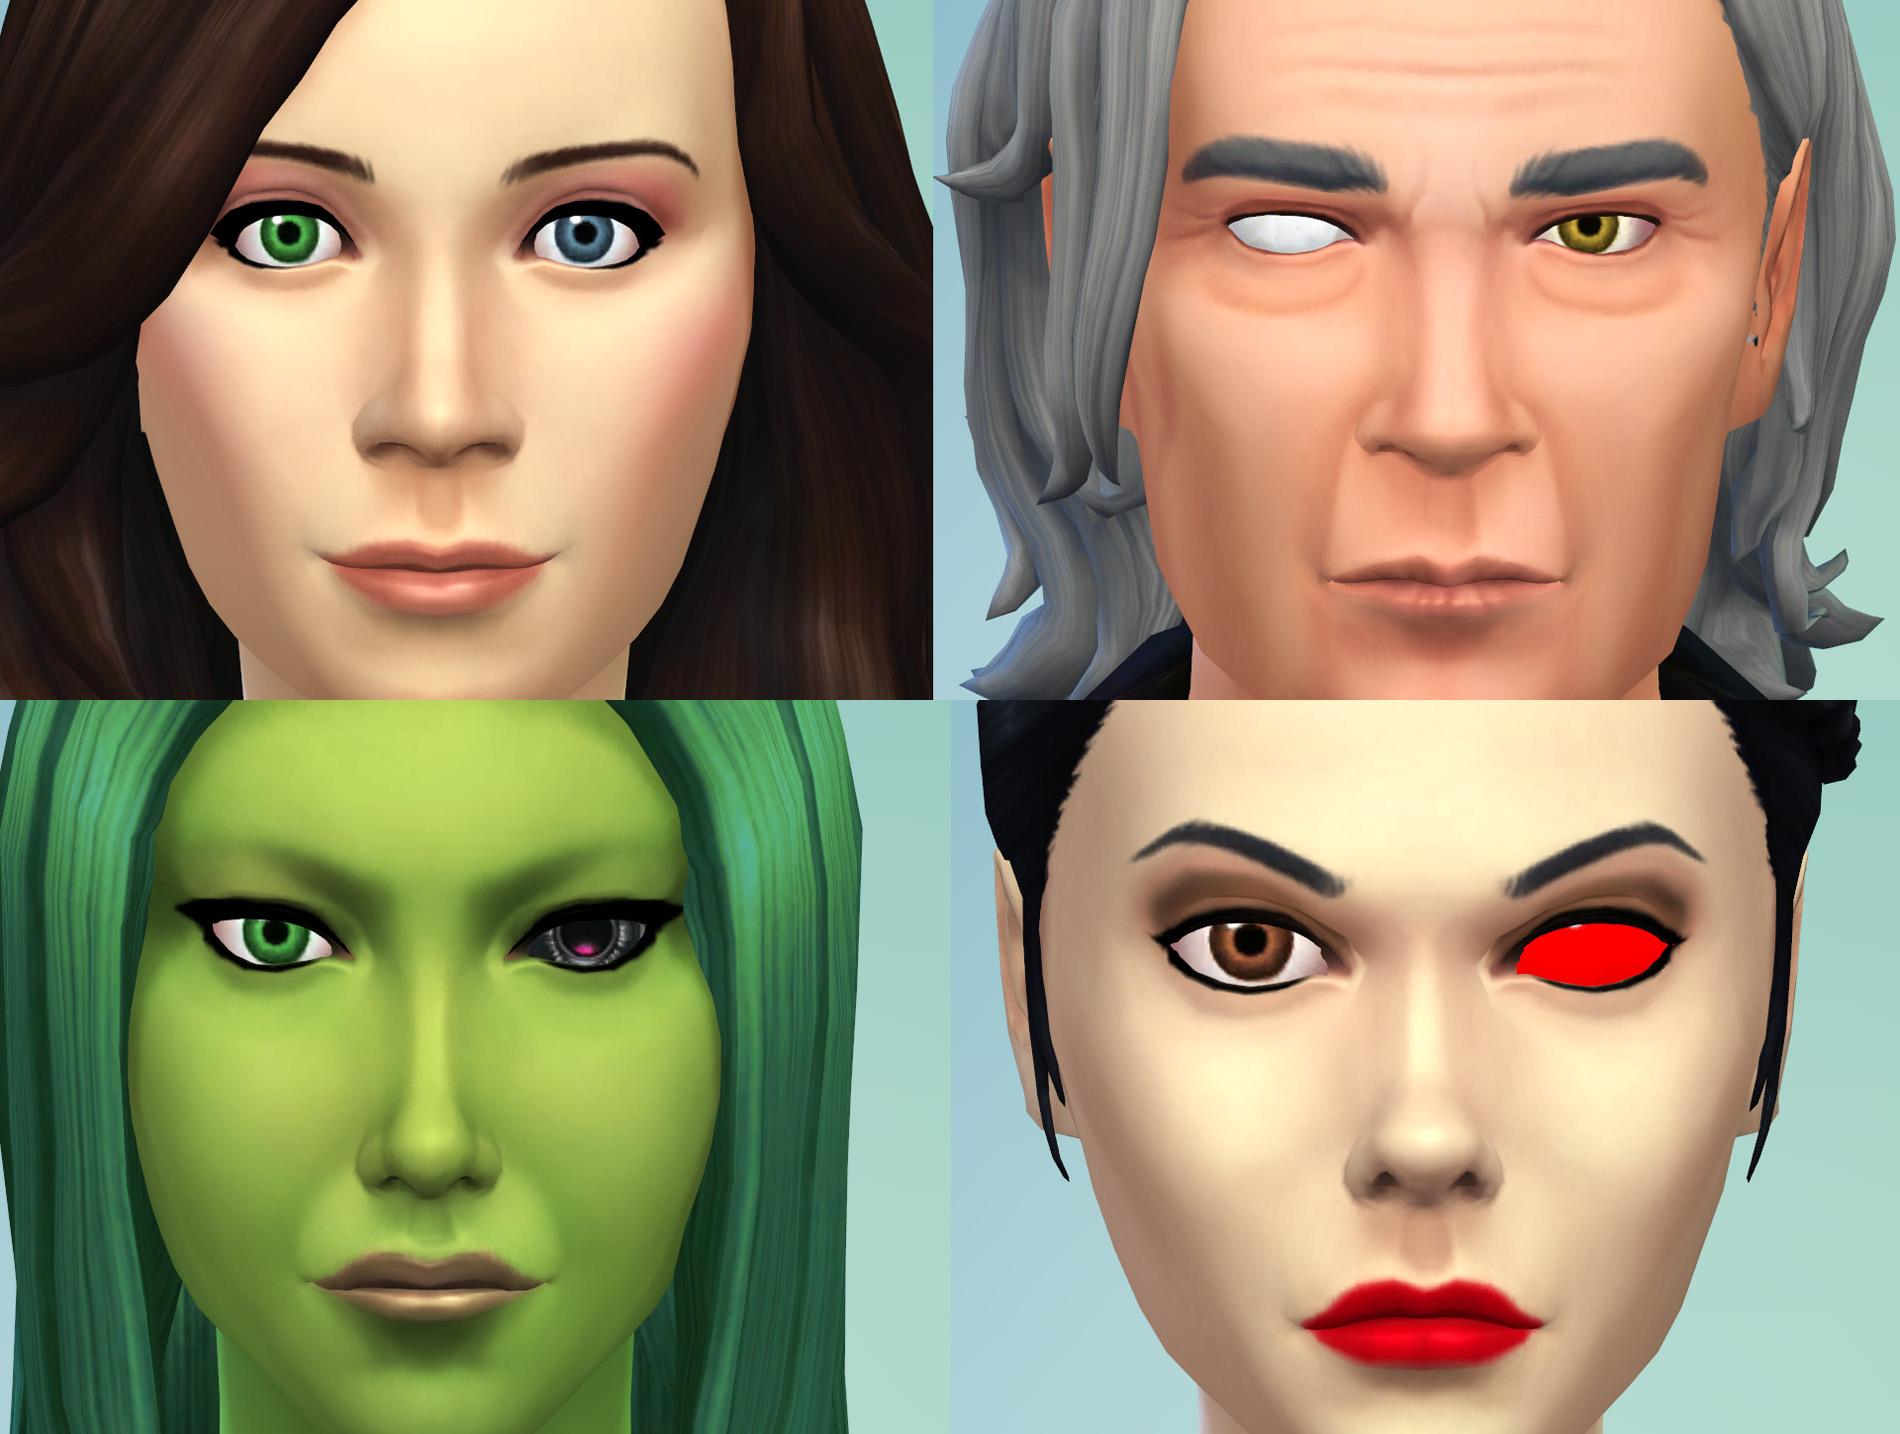 2 Different Eyes (Heterochromia, Blind Eye, Sci-Fi/Fantasy Eyes)